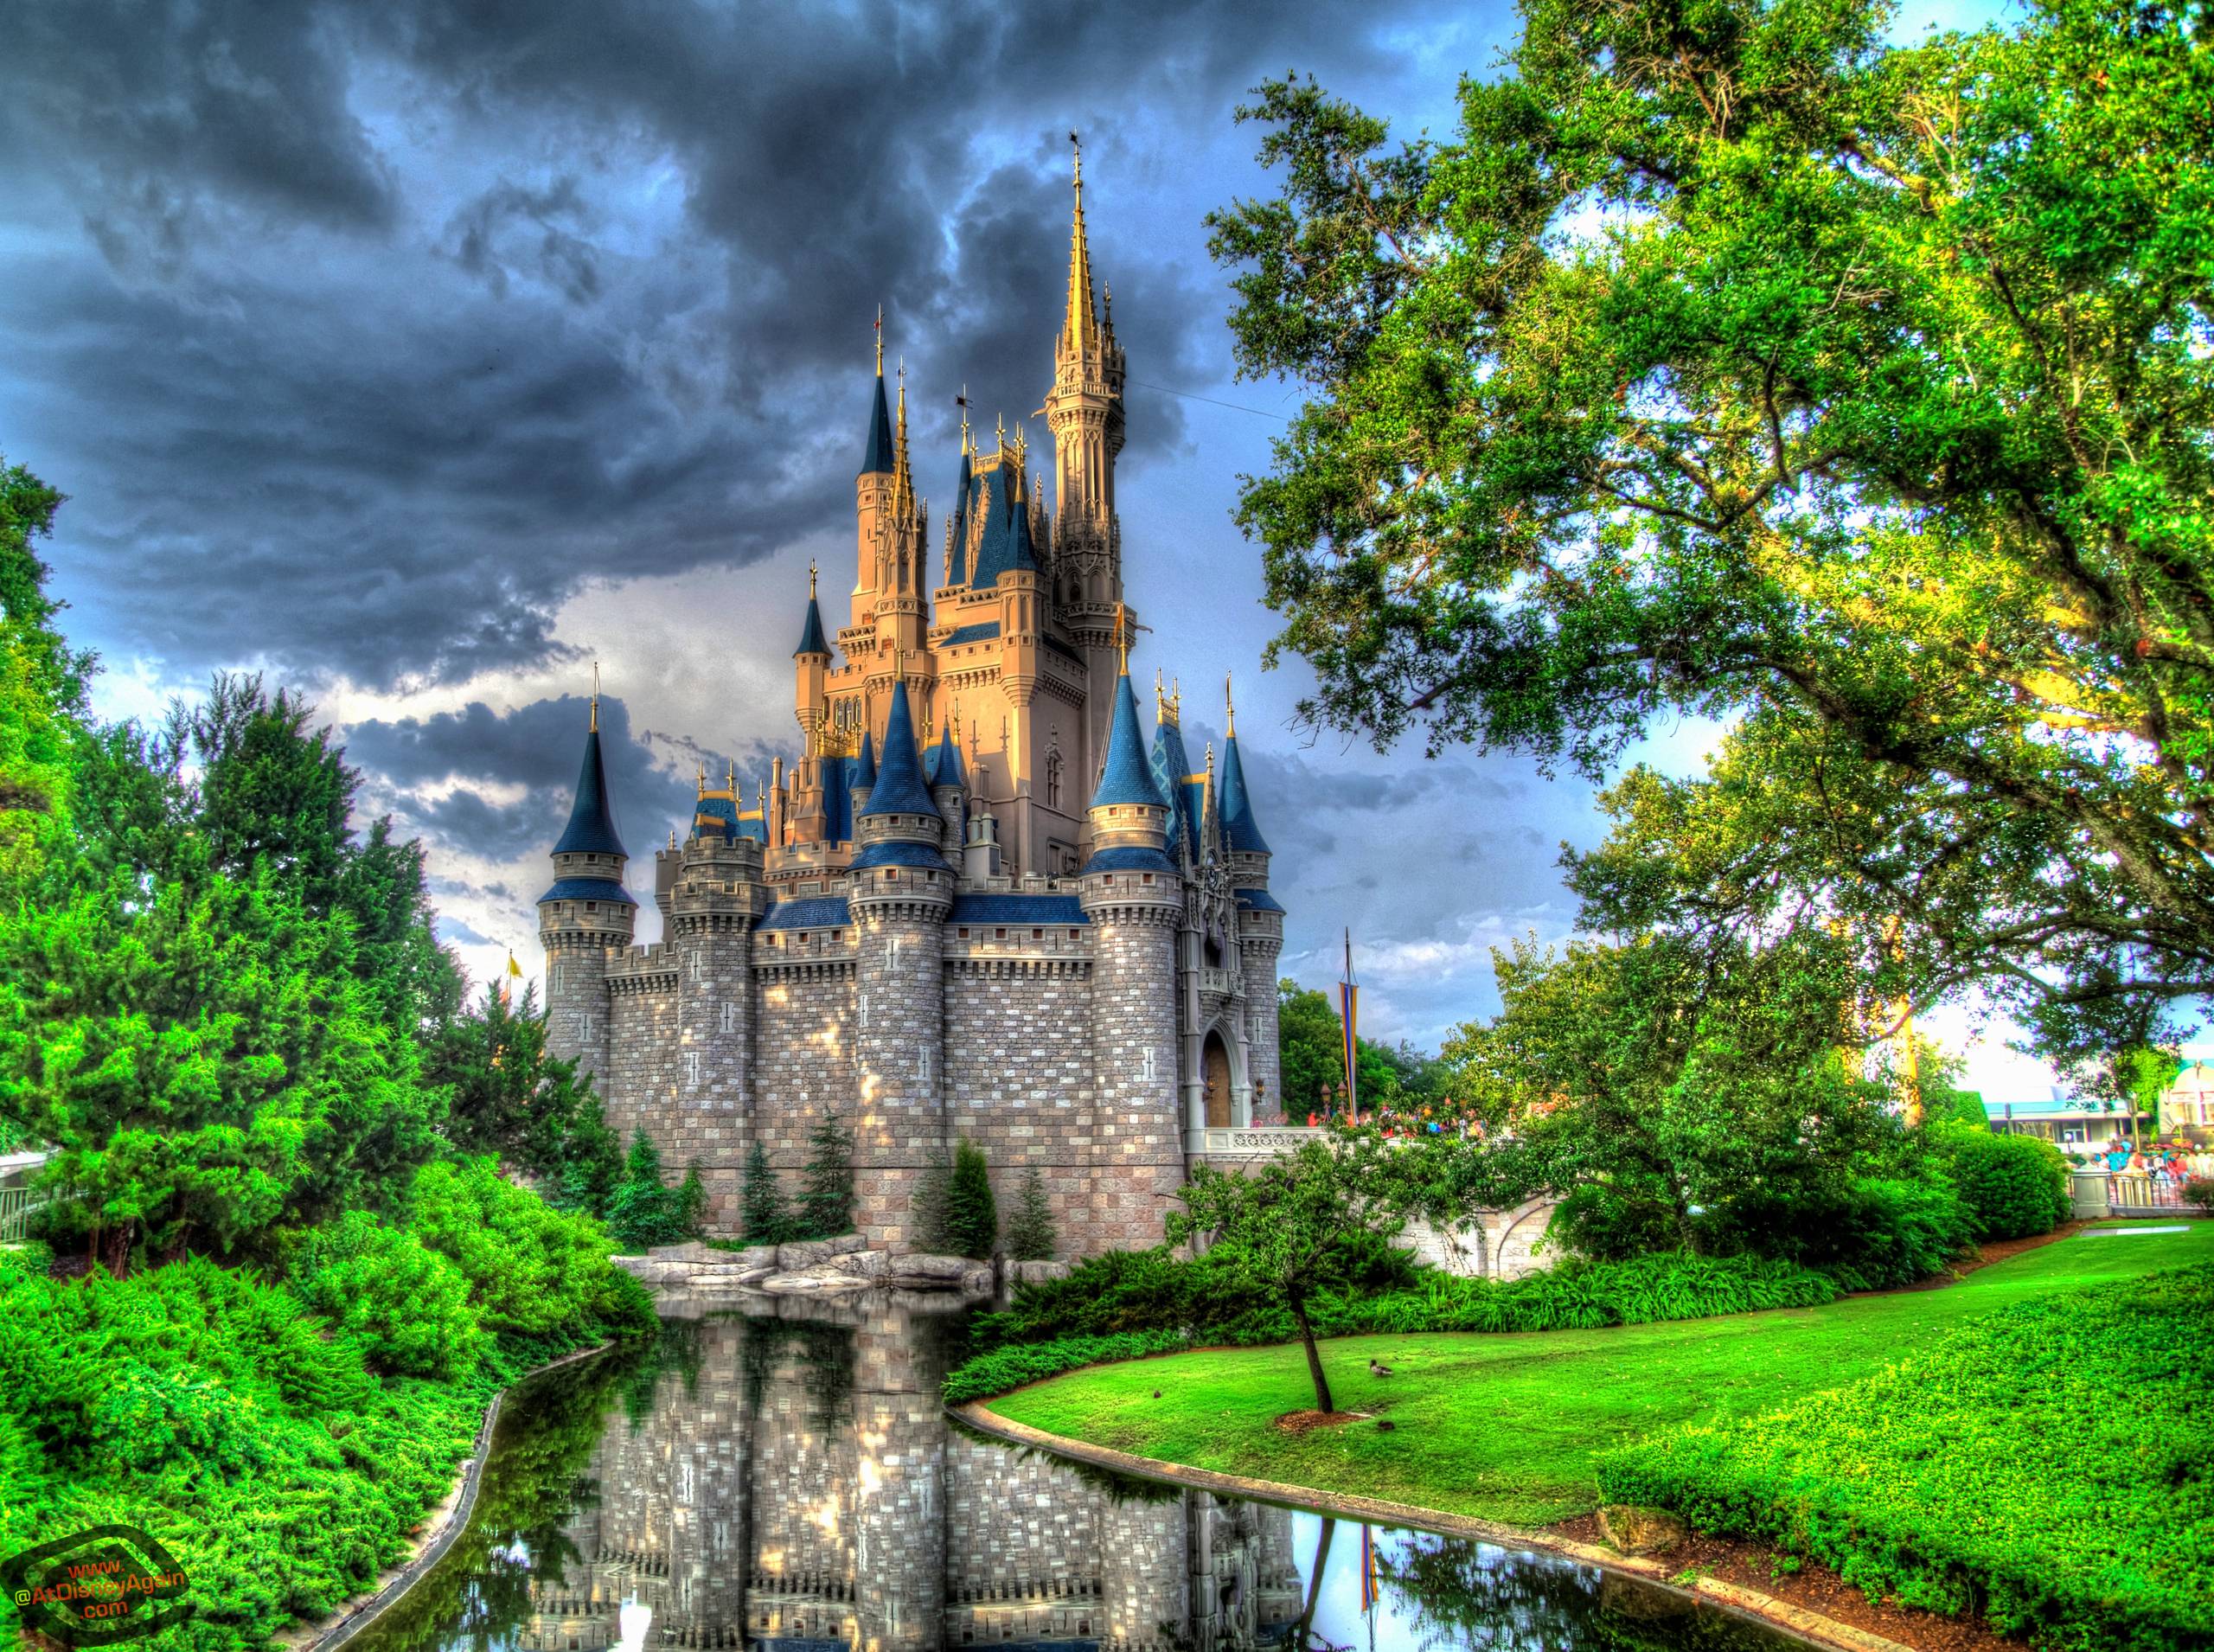 Disney Castle Backgrounds